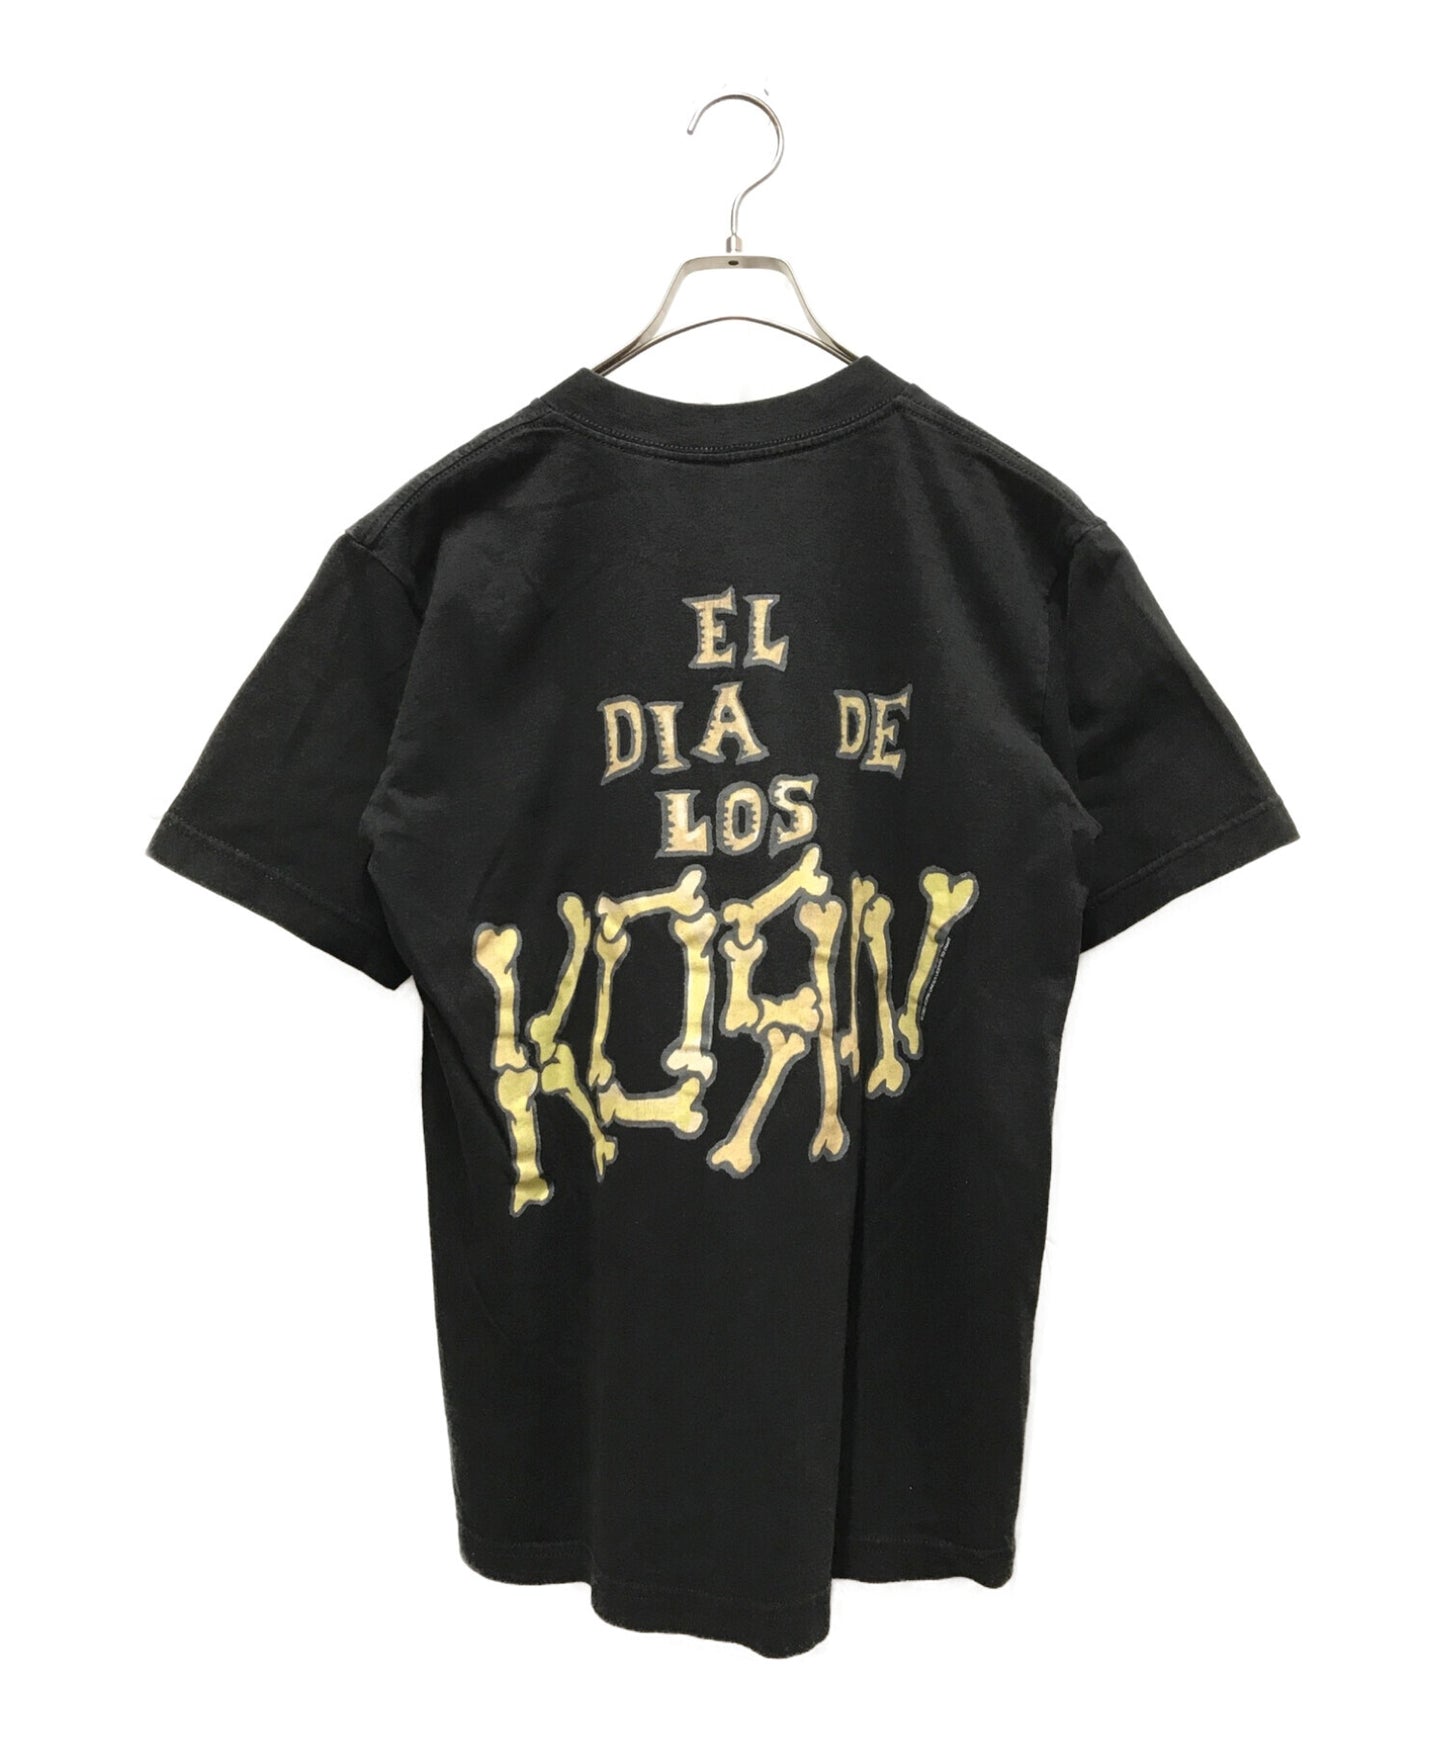 Korn 00의 빈티지 프린트 티셔츠